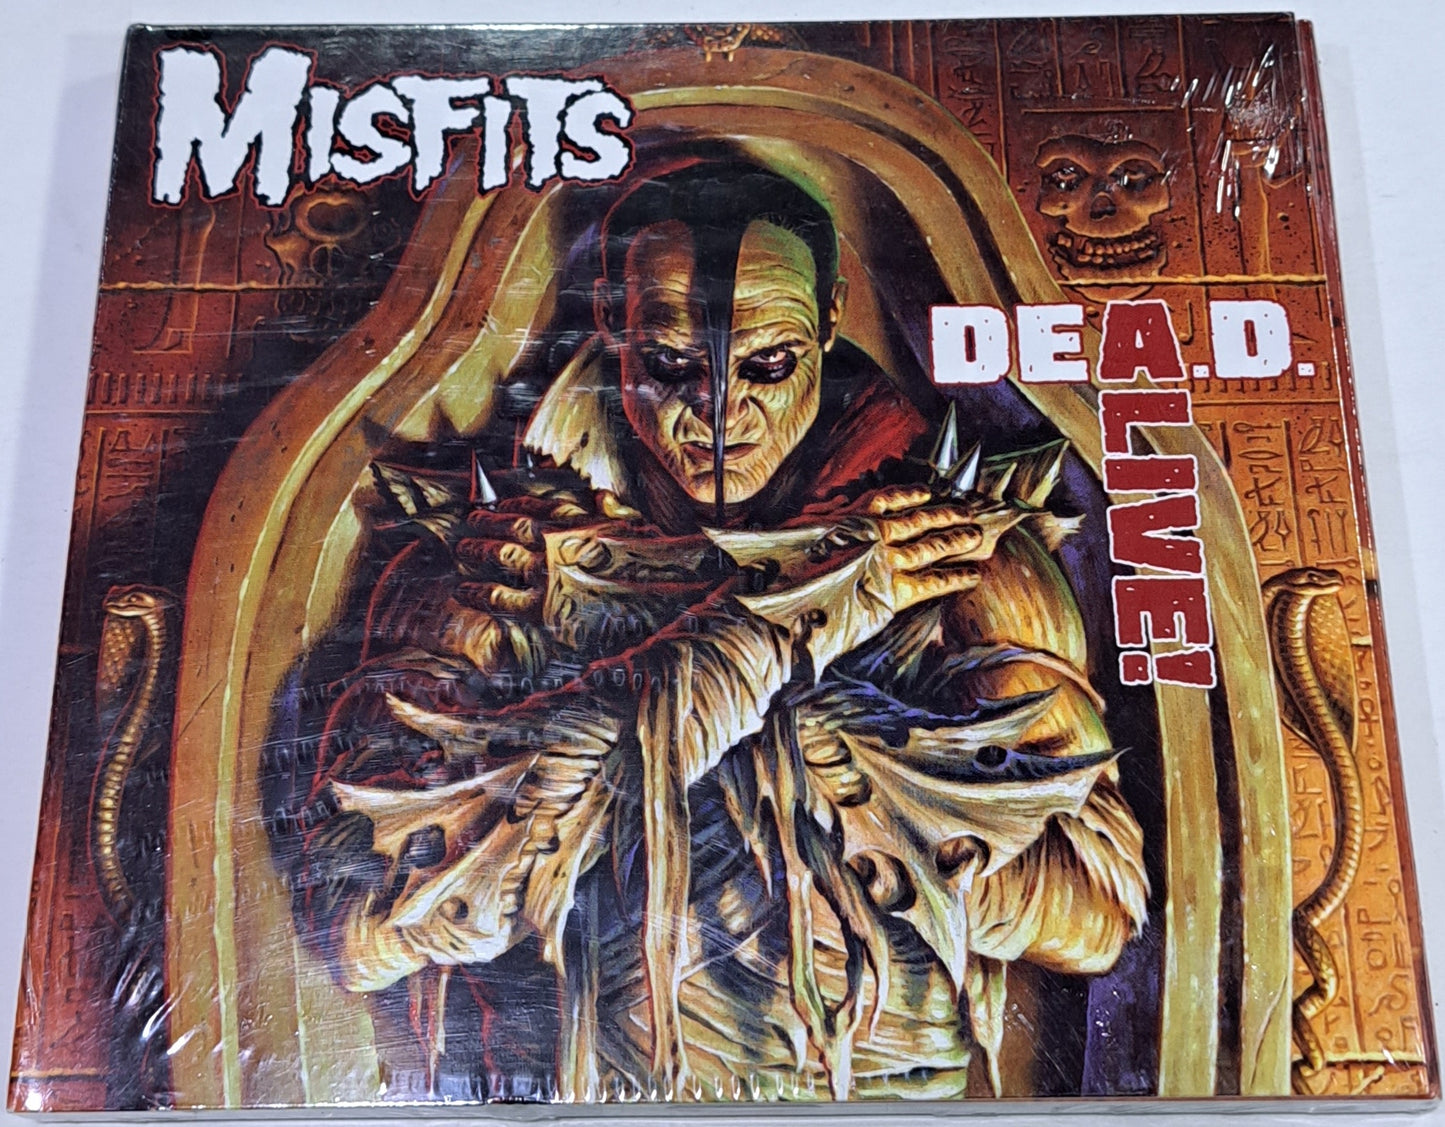 MISFITS - DEAD ALIVE  CD